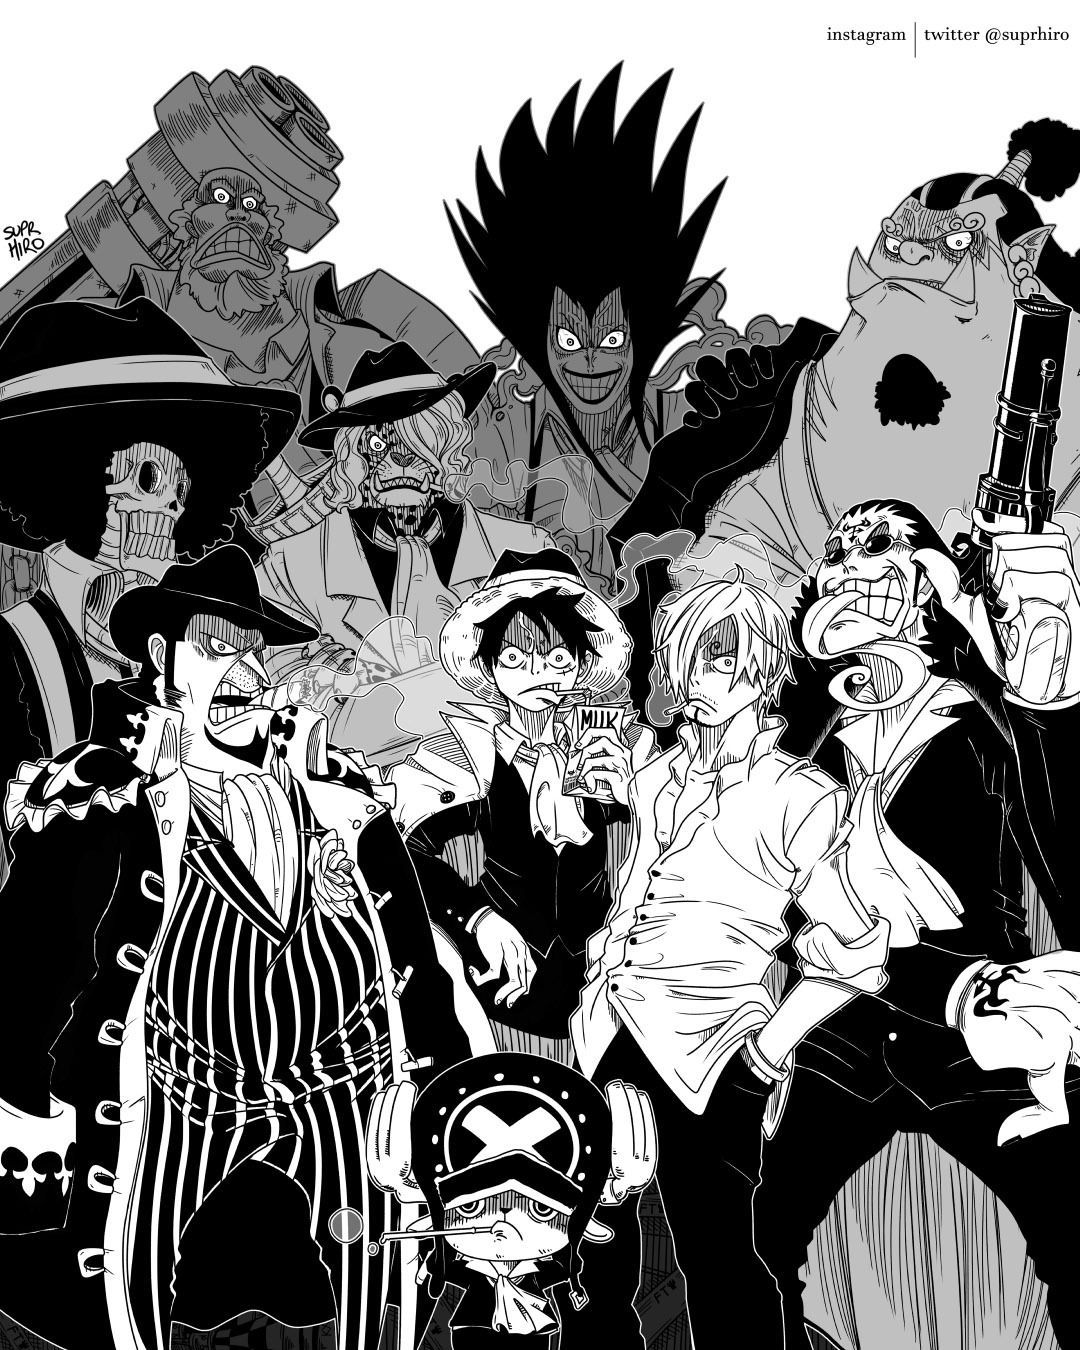 Monkey D Luffy Capone Bege Alliance One Piece. One piece drawing, One piece chapter, One piece anime